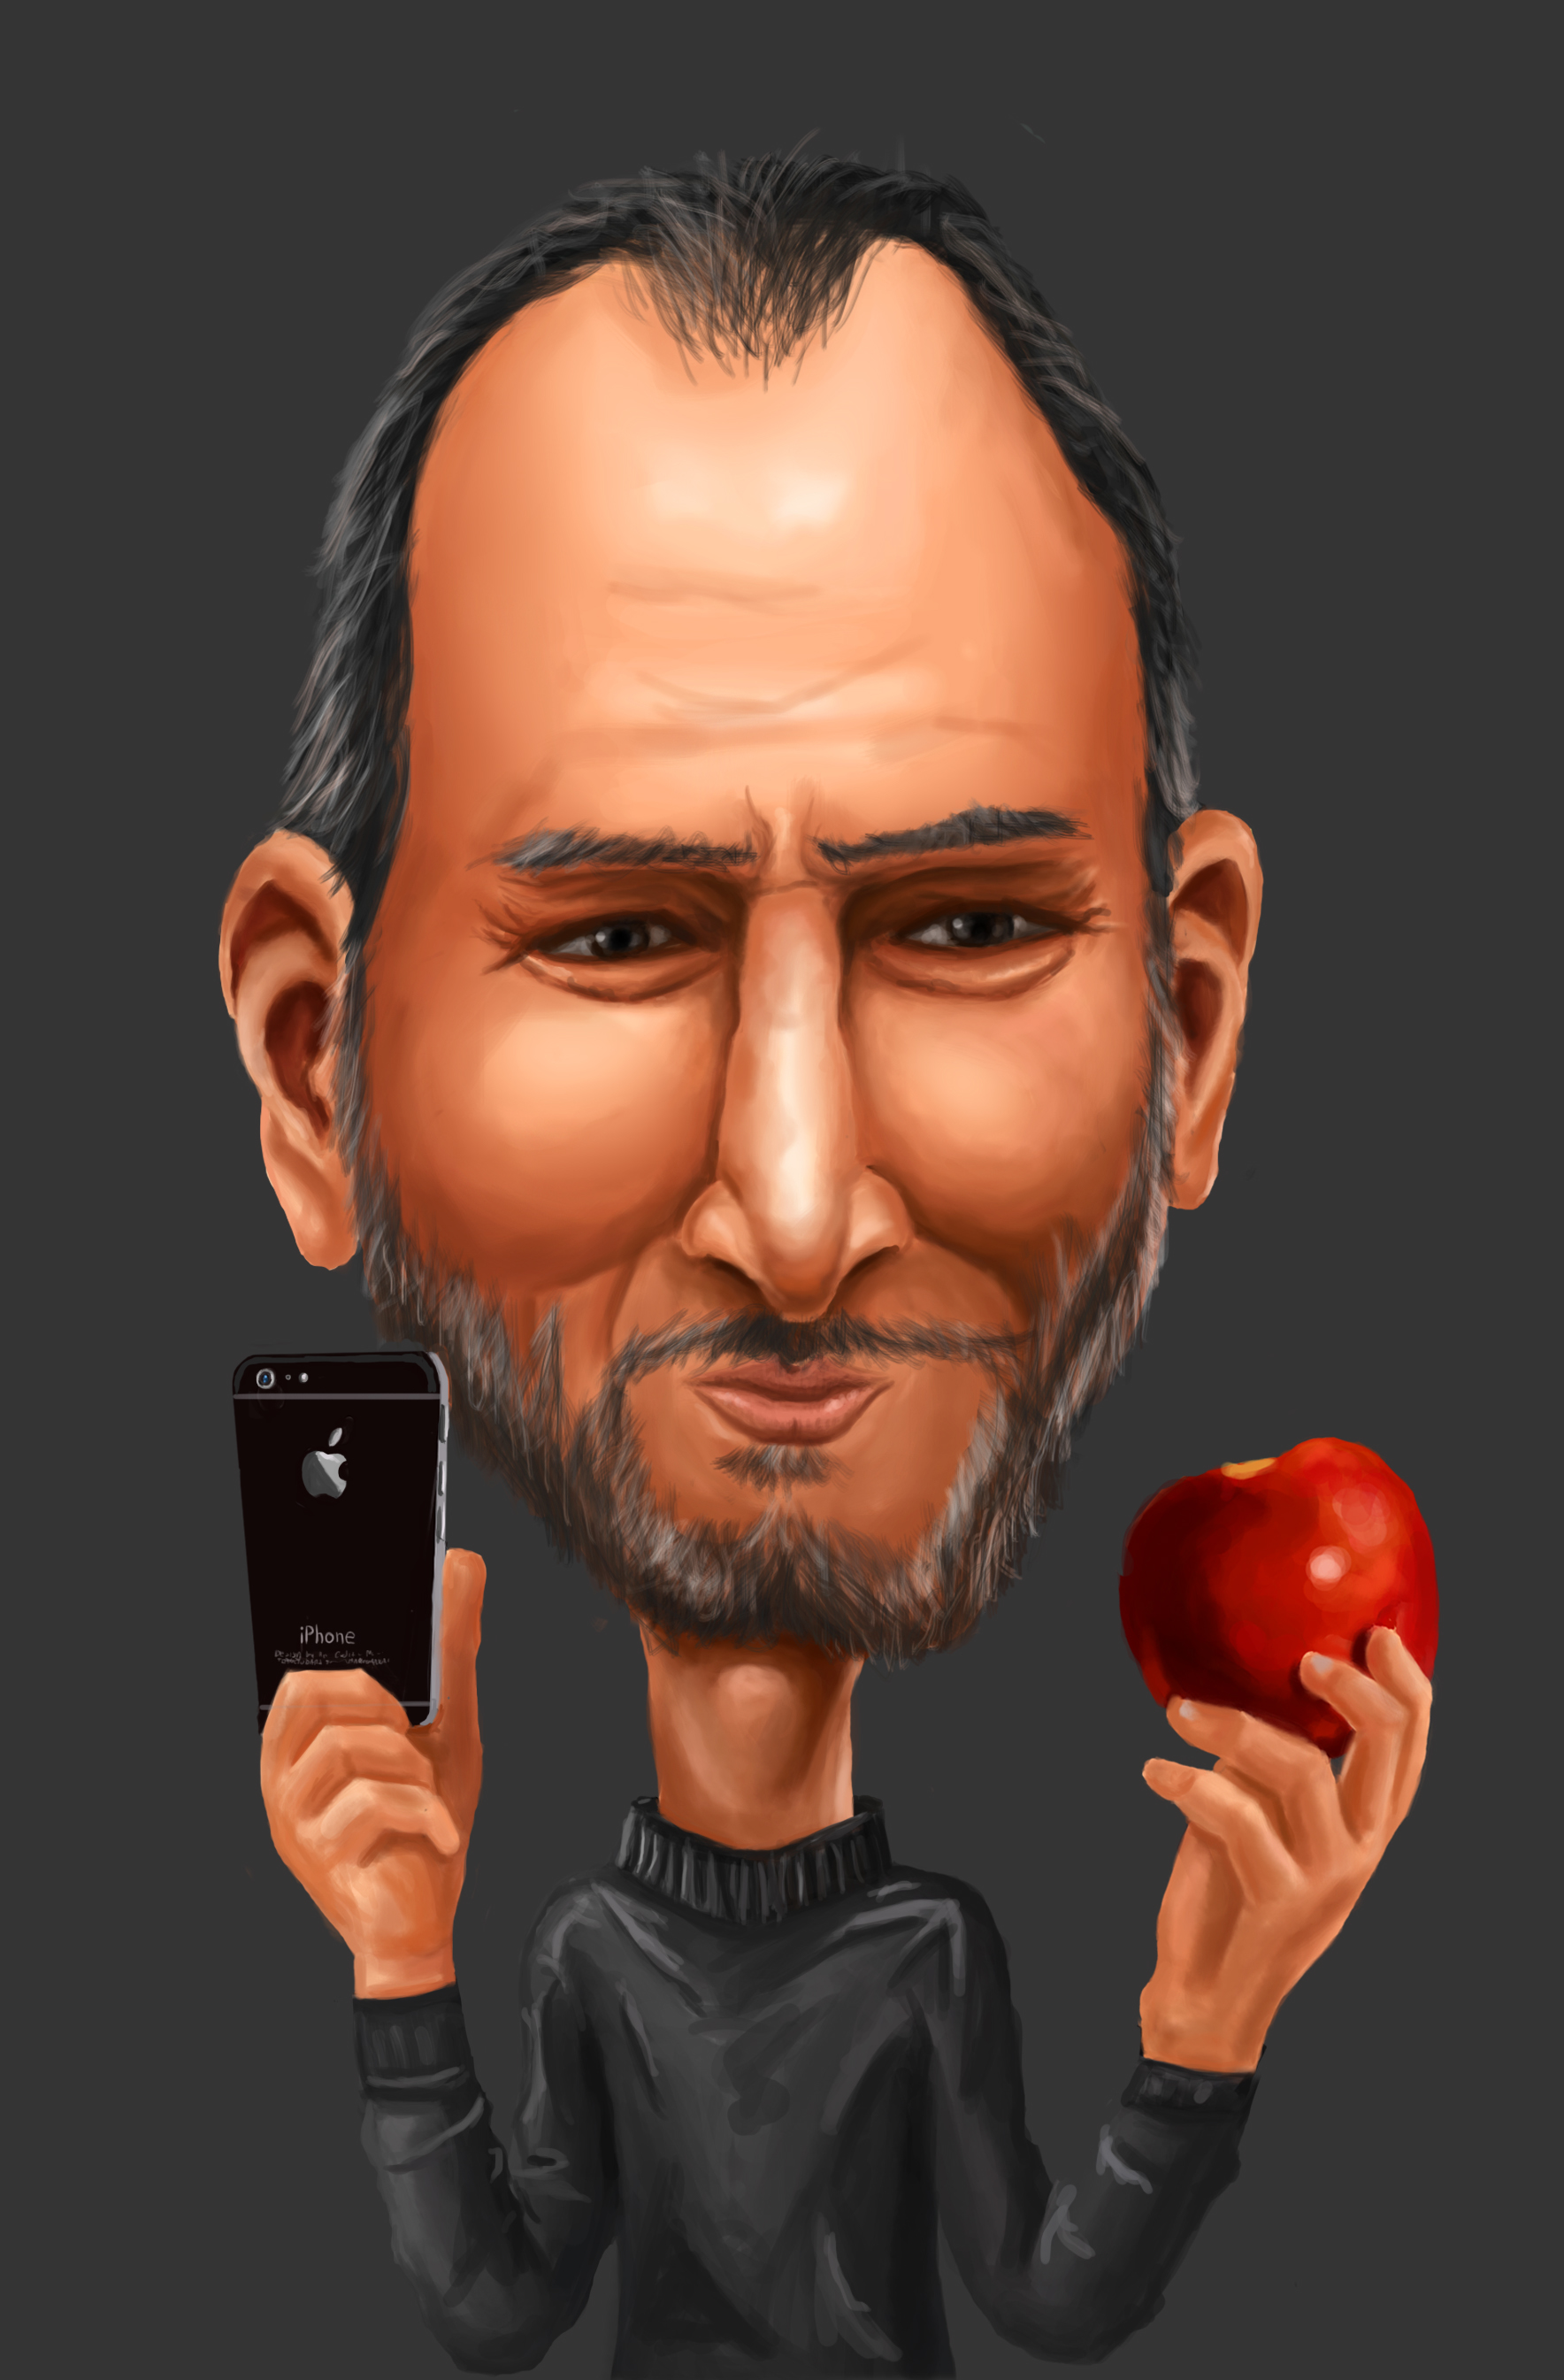 Steve Jobs Cartoon on Behance